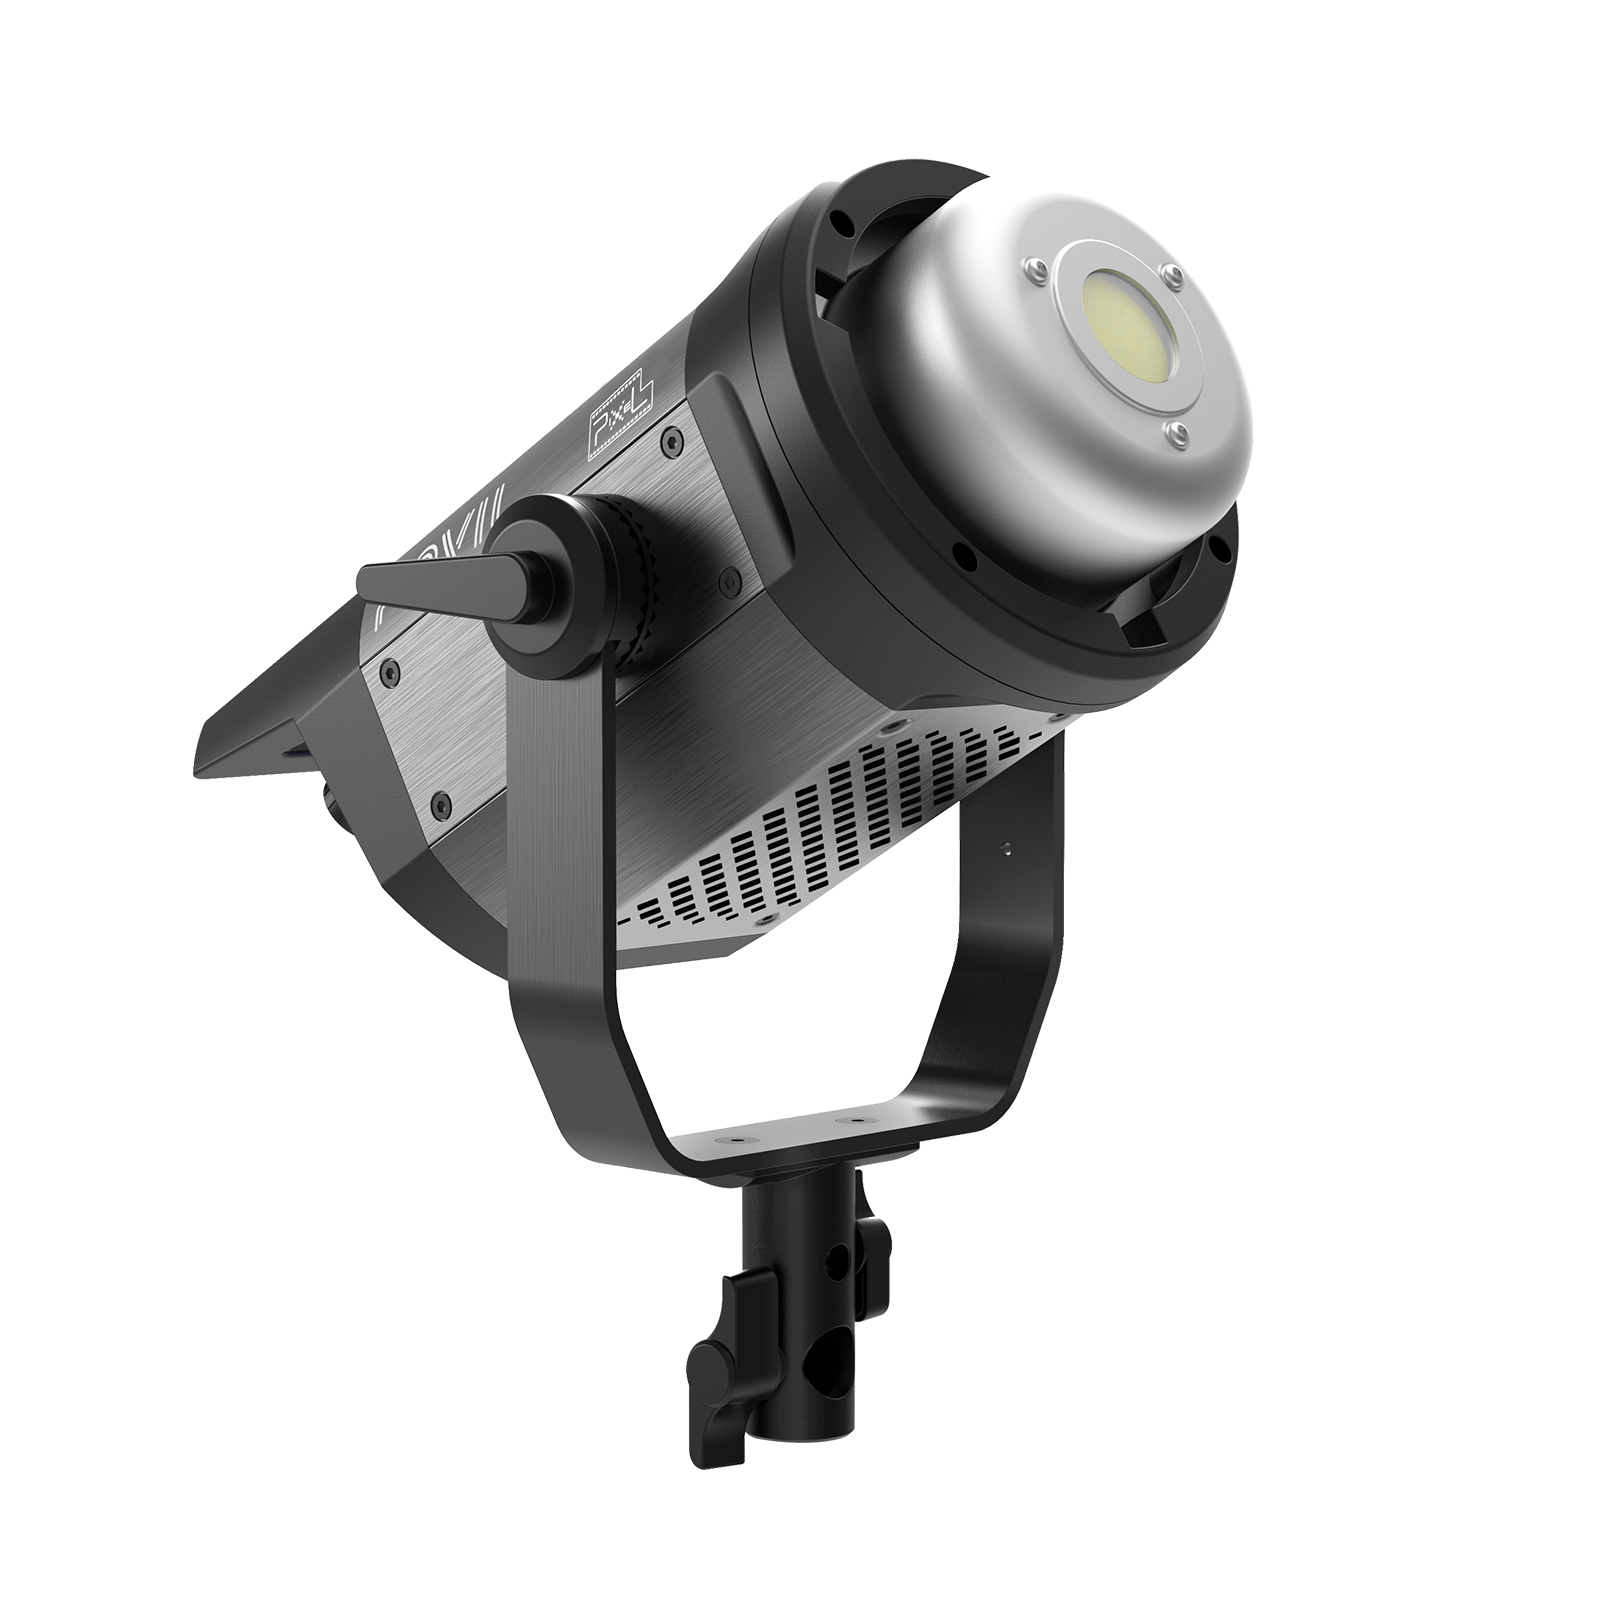 品色PixelC100 COB摄影灯,轻薄便携,智能特效,灵活调色